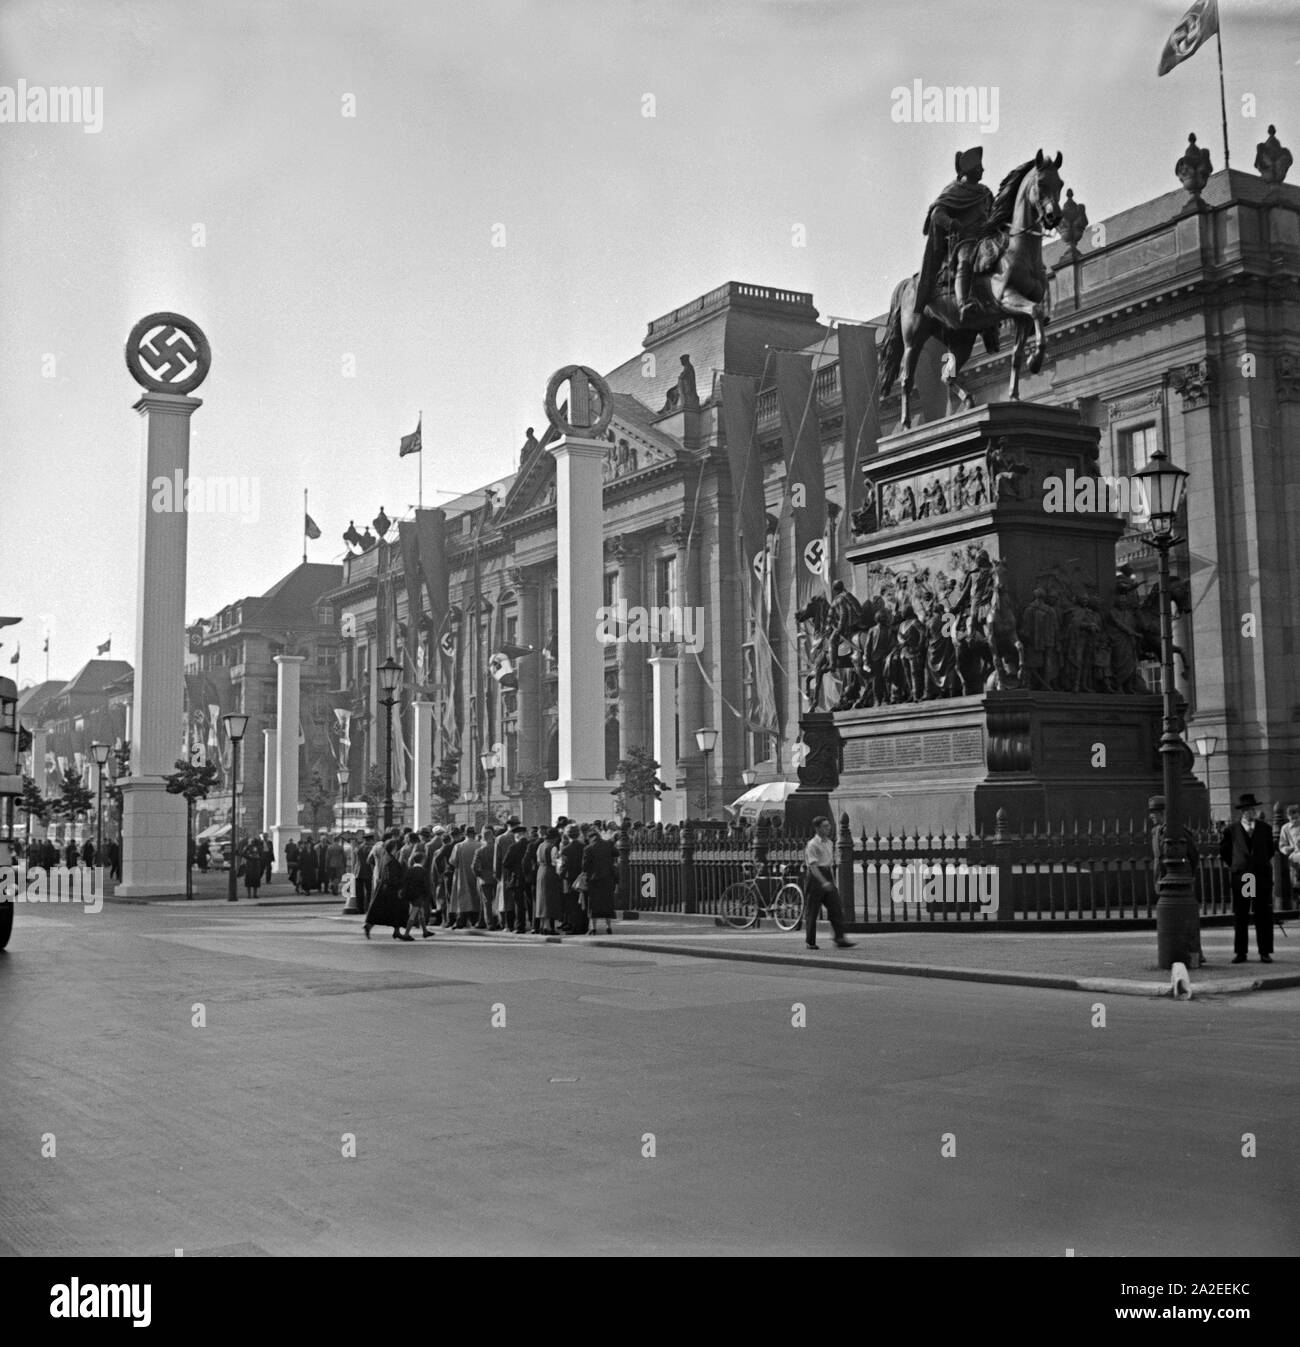 Unter den Linden in Berlin mit dem Denkmal Friedrich II., Deutschland 1930er Jahre. The Unter den Linden avenue at Berlin with Friedrich II monument, Germany 1930s. Stock Photo